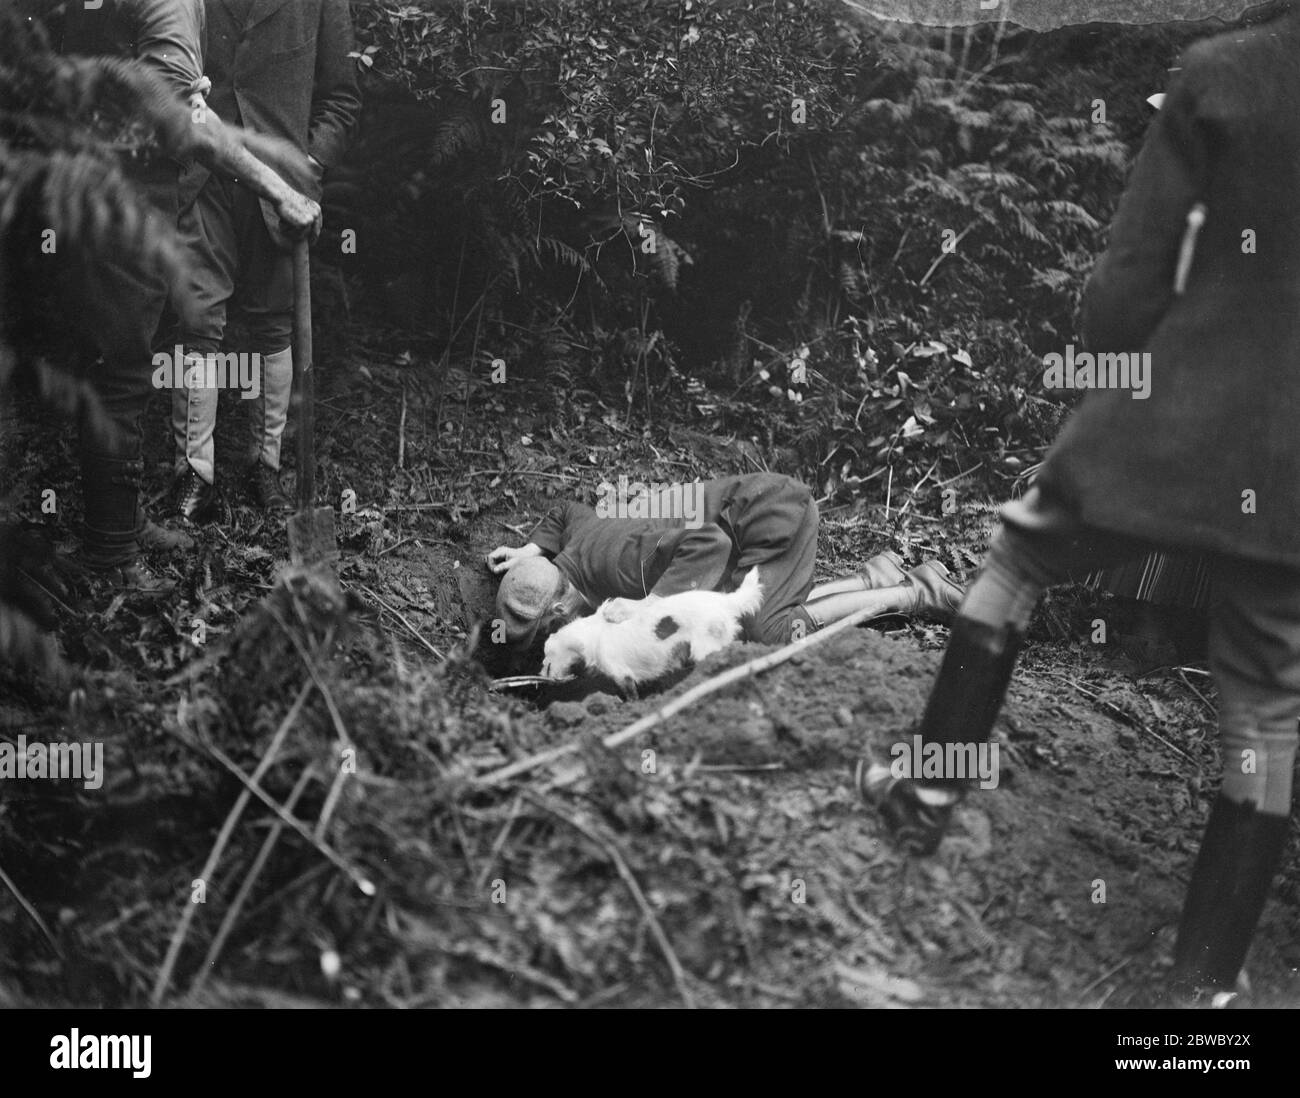 Gesellschaft jagt mit einer Dame M F H zu Boden gegangen. Setzen in den Terrier, um den Jungbolzen aus seinem Verheil zu machen 5 September 1922 Stockfoto